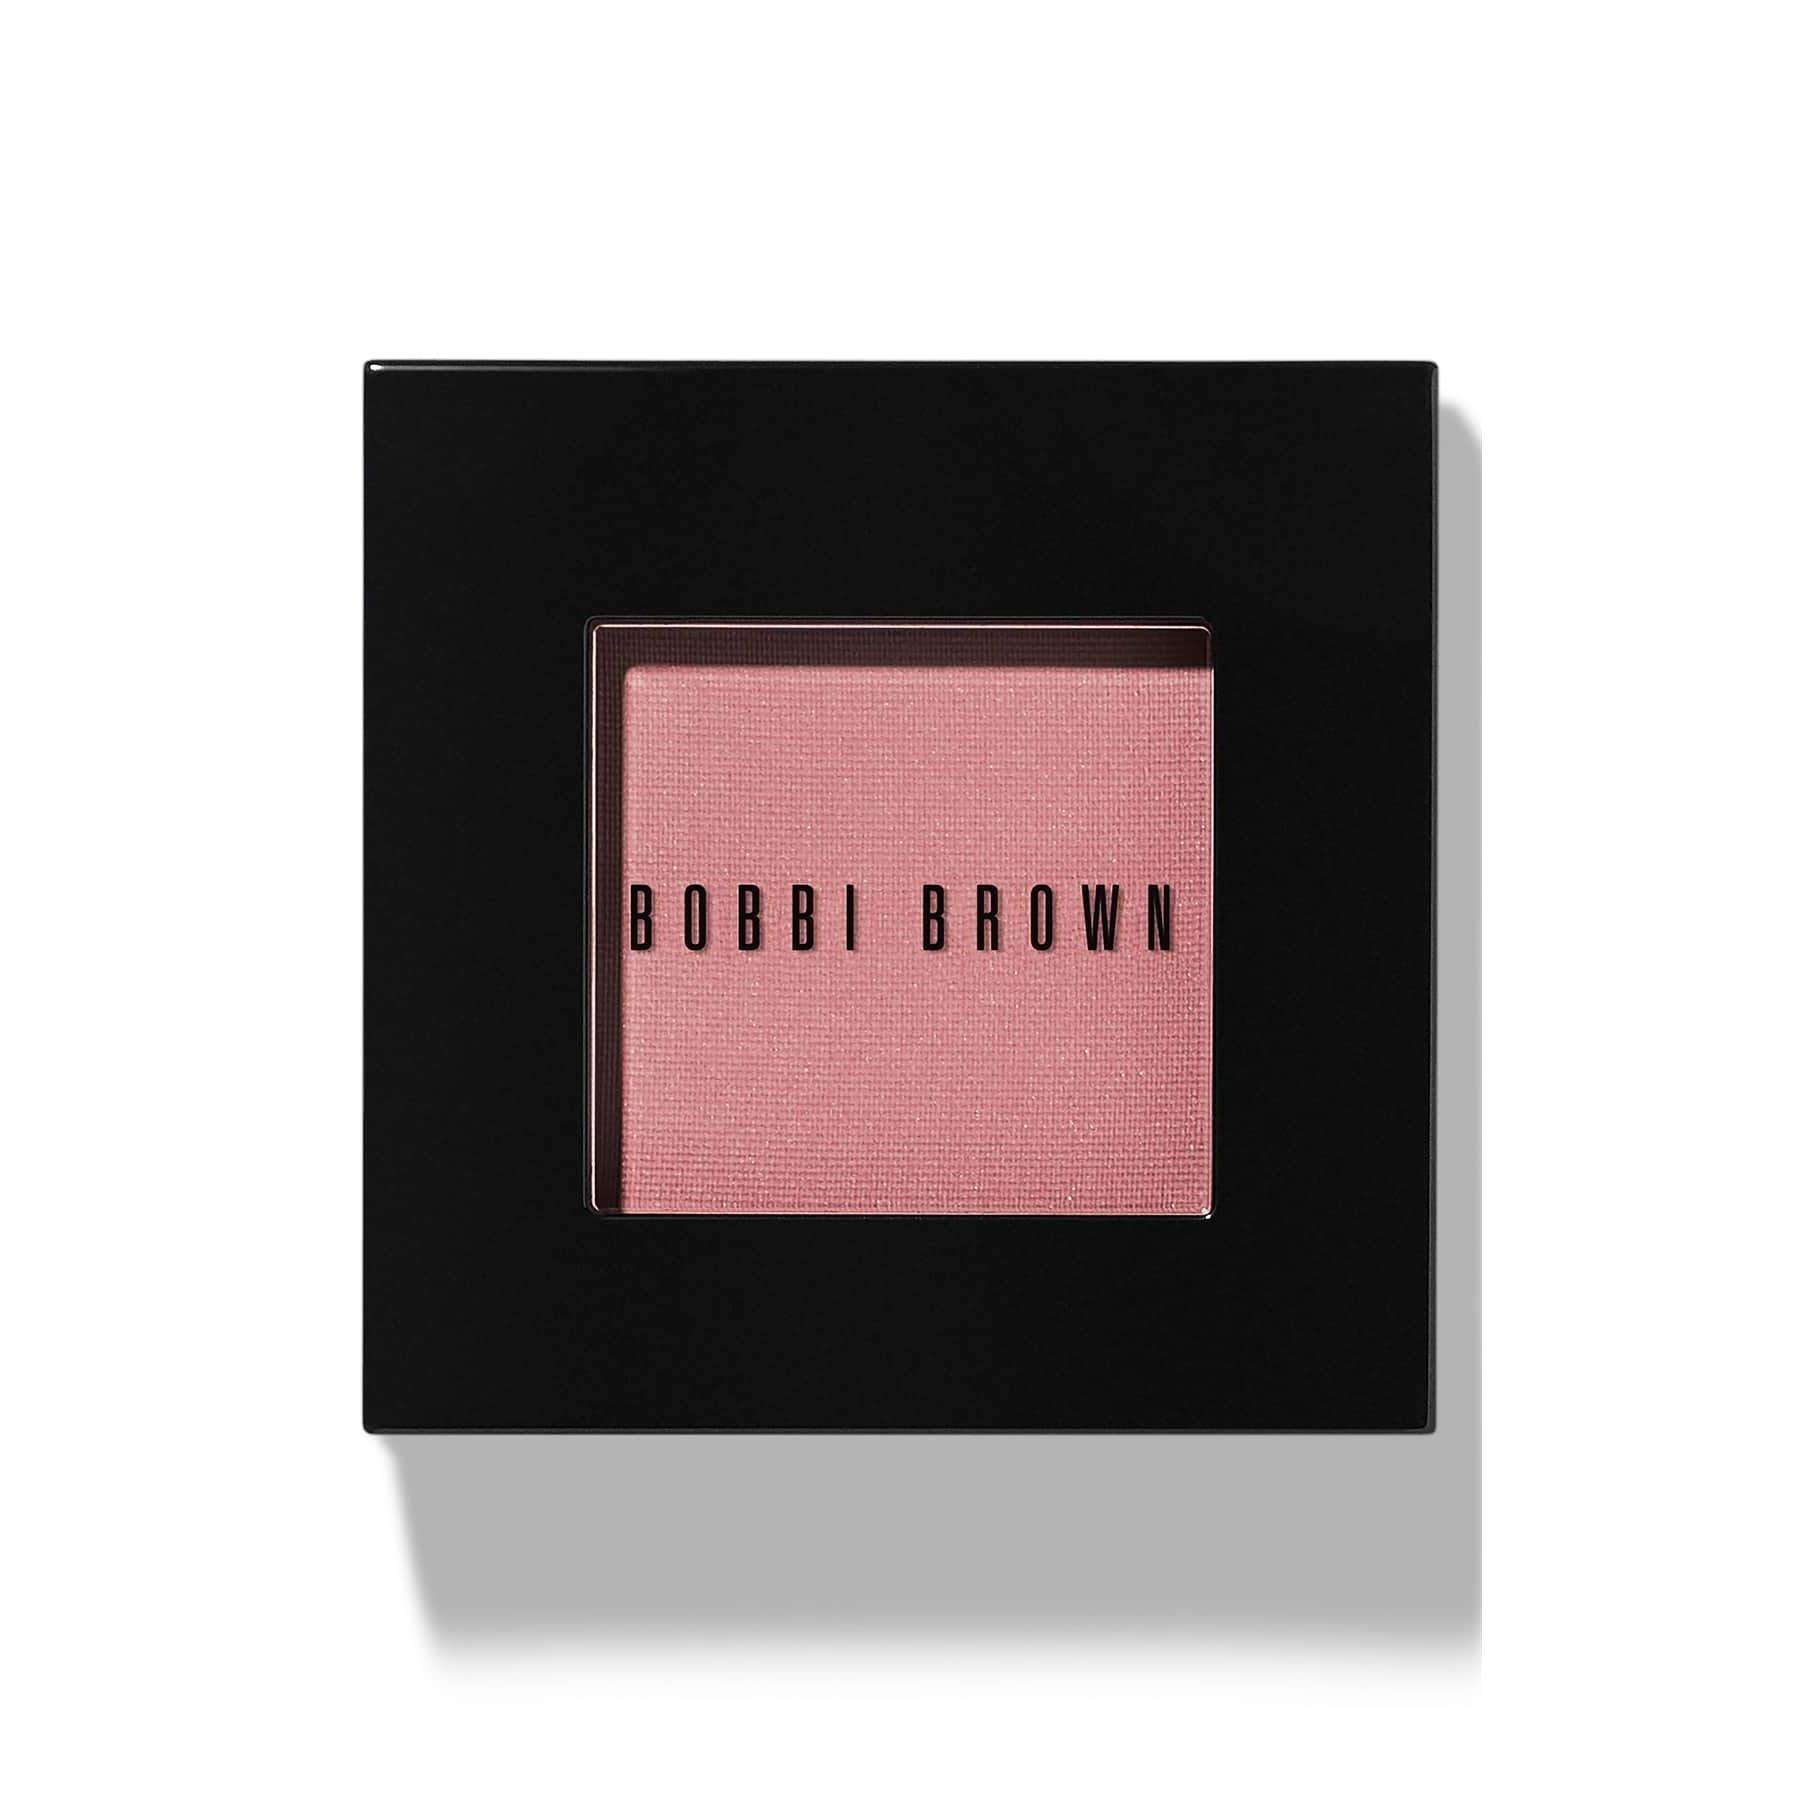 Bobbi Brown Blush Desert Pink